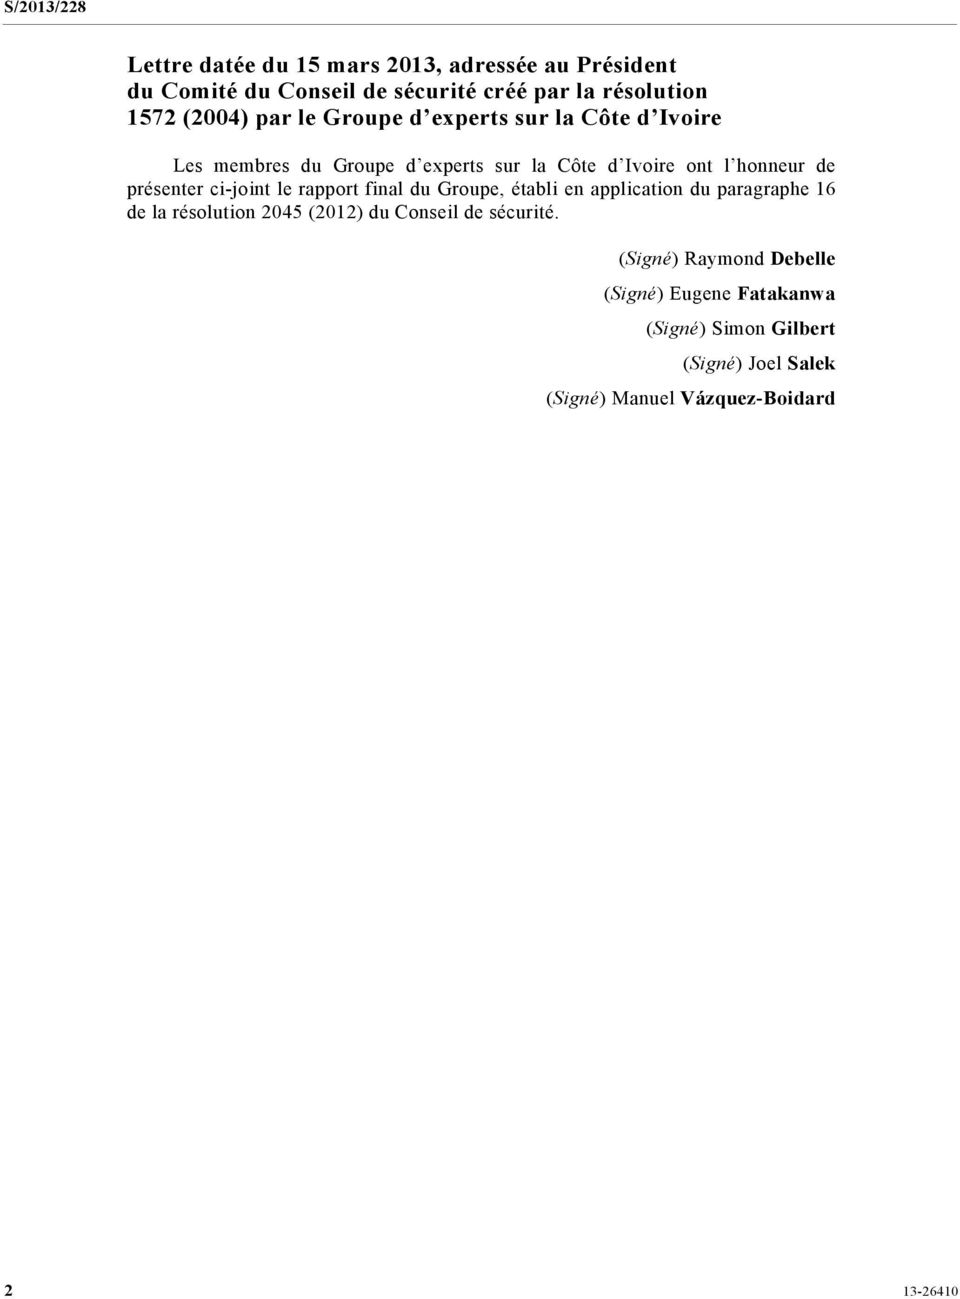 ci-joint le rapport final du Groupe, établi en application du paragraphe 16 de la résolution 2045 (2012) du Conseil de